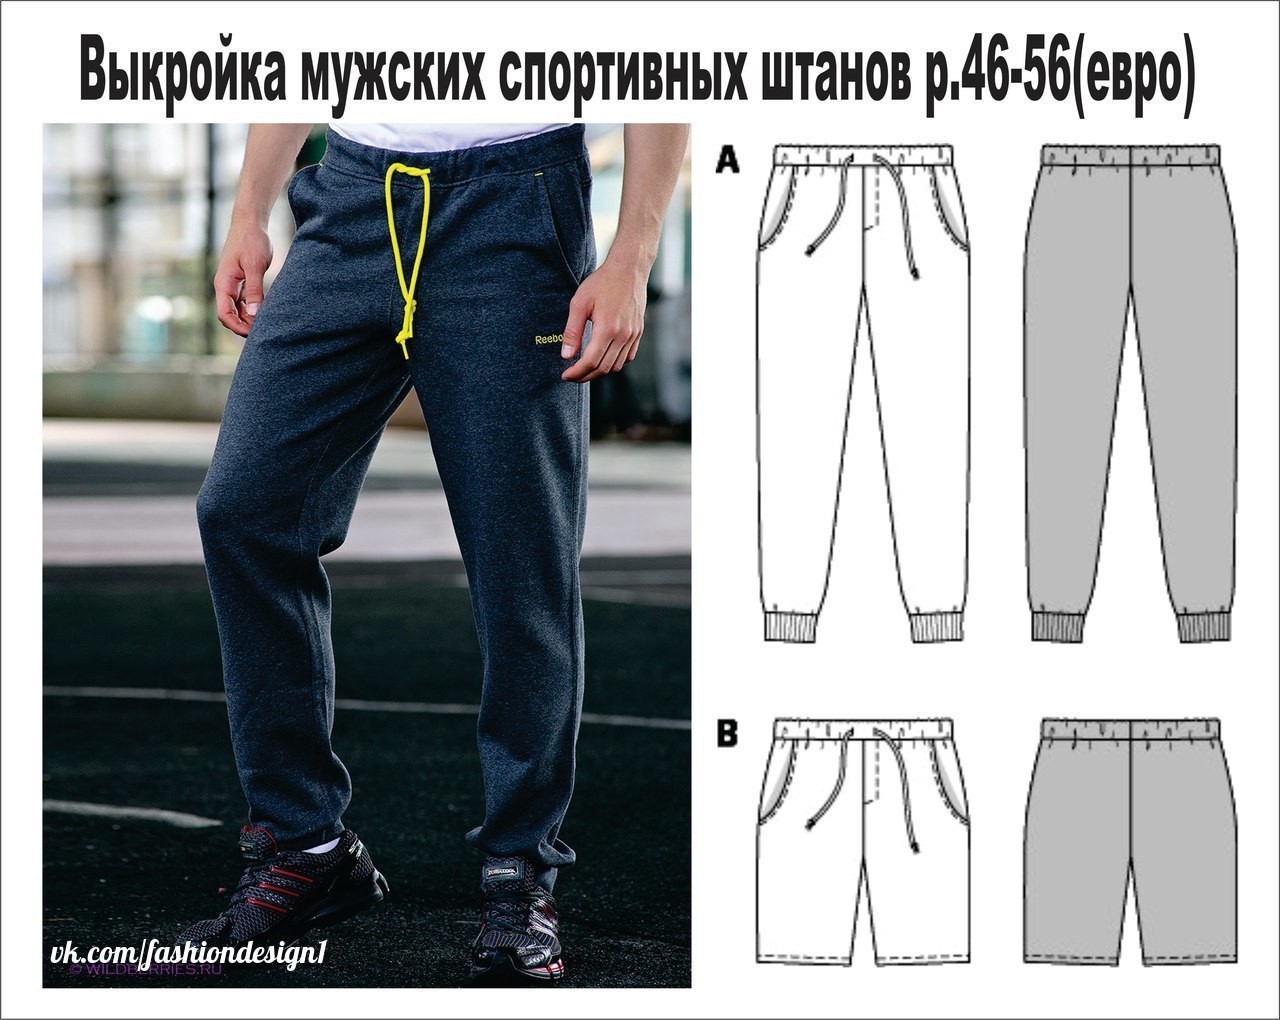 Выкройка спортивных штанов мужских